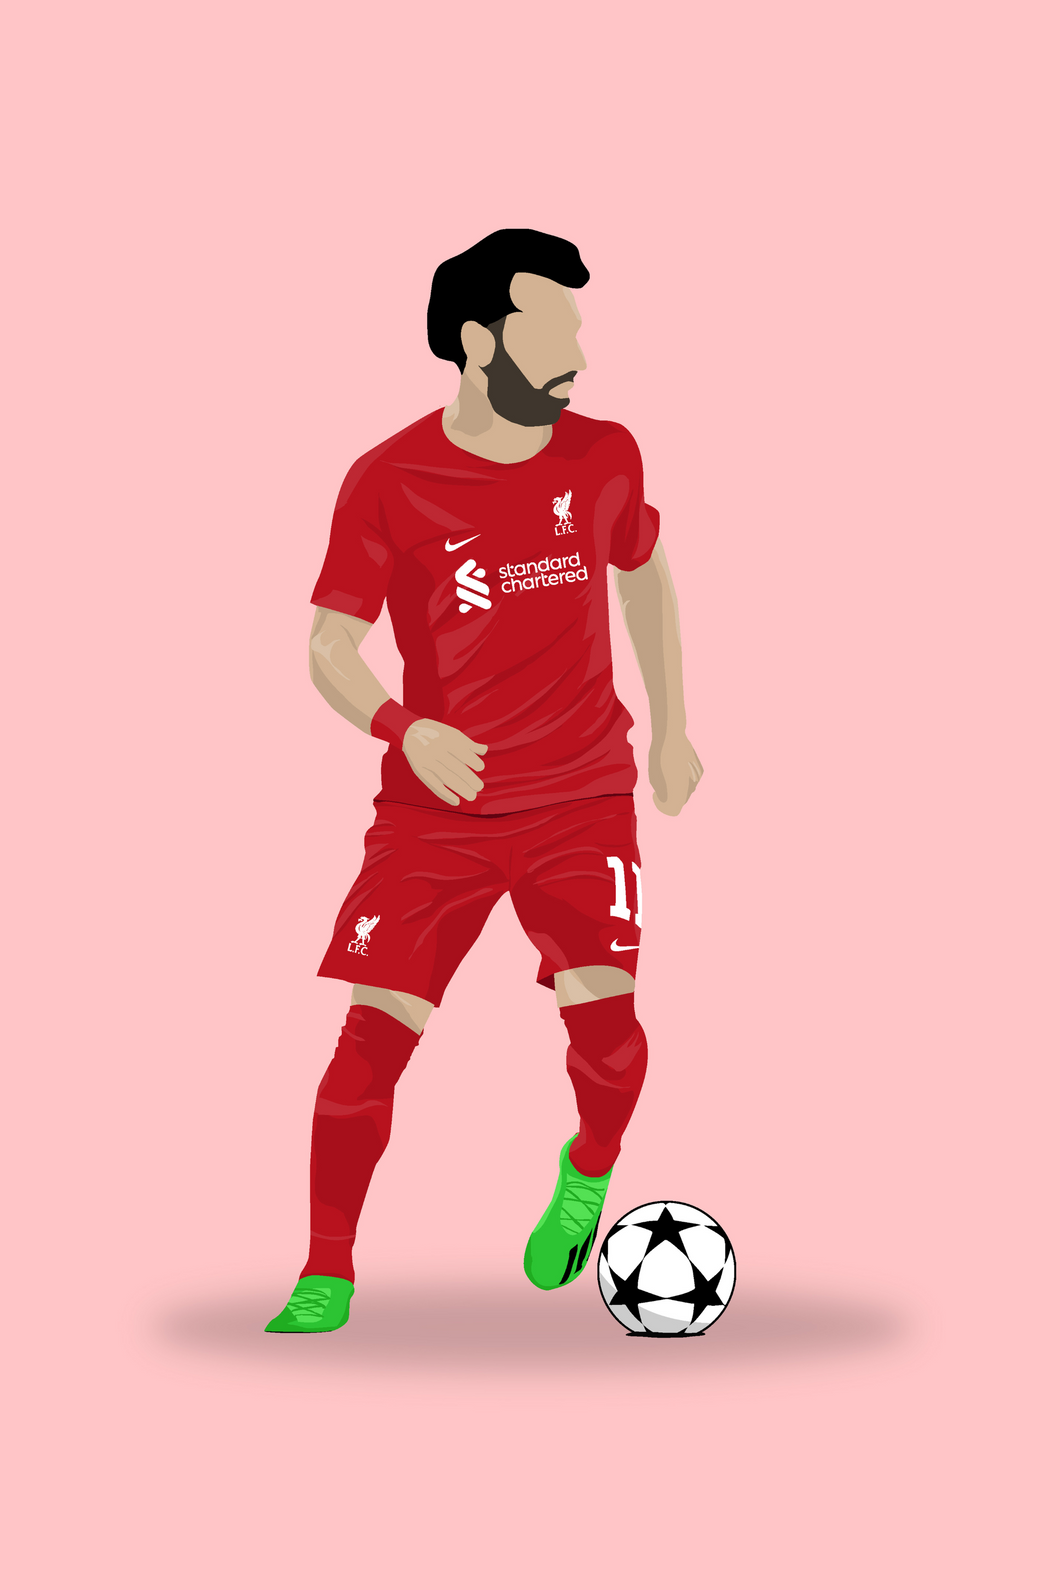 Mo Salah - Liverpool